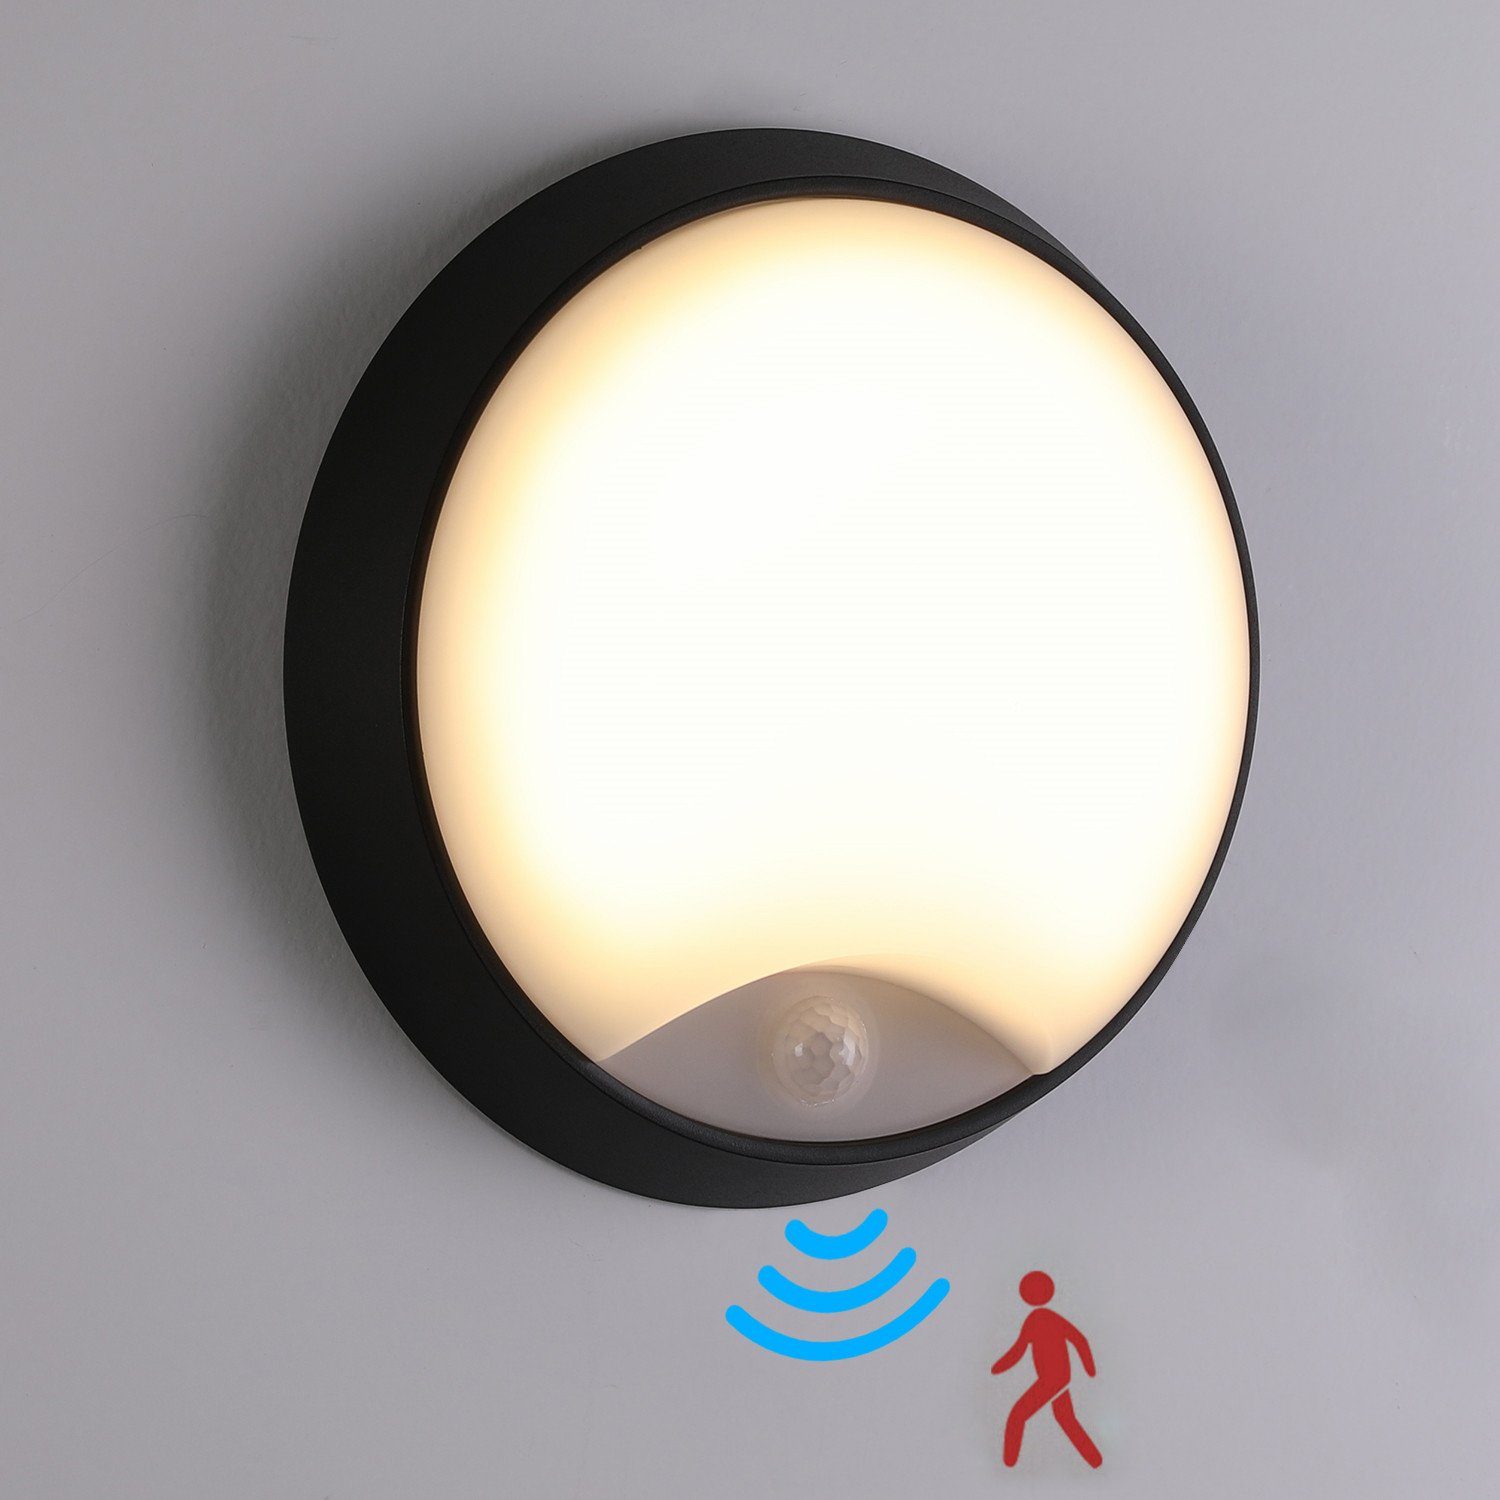 iscooter Außen-Wandleuchte LED Wandleuchte Wand-Lampe mit Bewegungsmelder IP54 Rund Innen Außen, LED fest integriert, Warmweiß, 10W LED Aussenleuchte, 10 m Reichweite, Außenbeleuchtung von Wänden